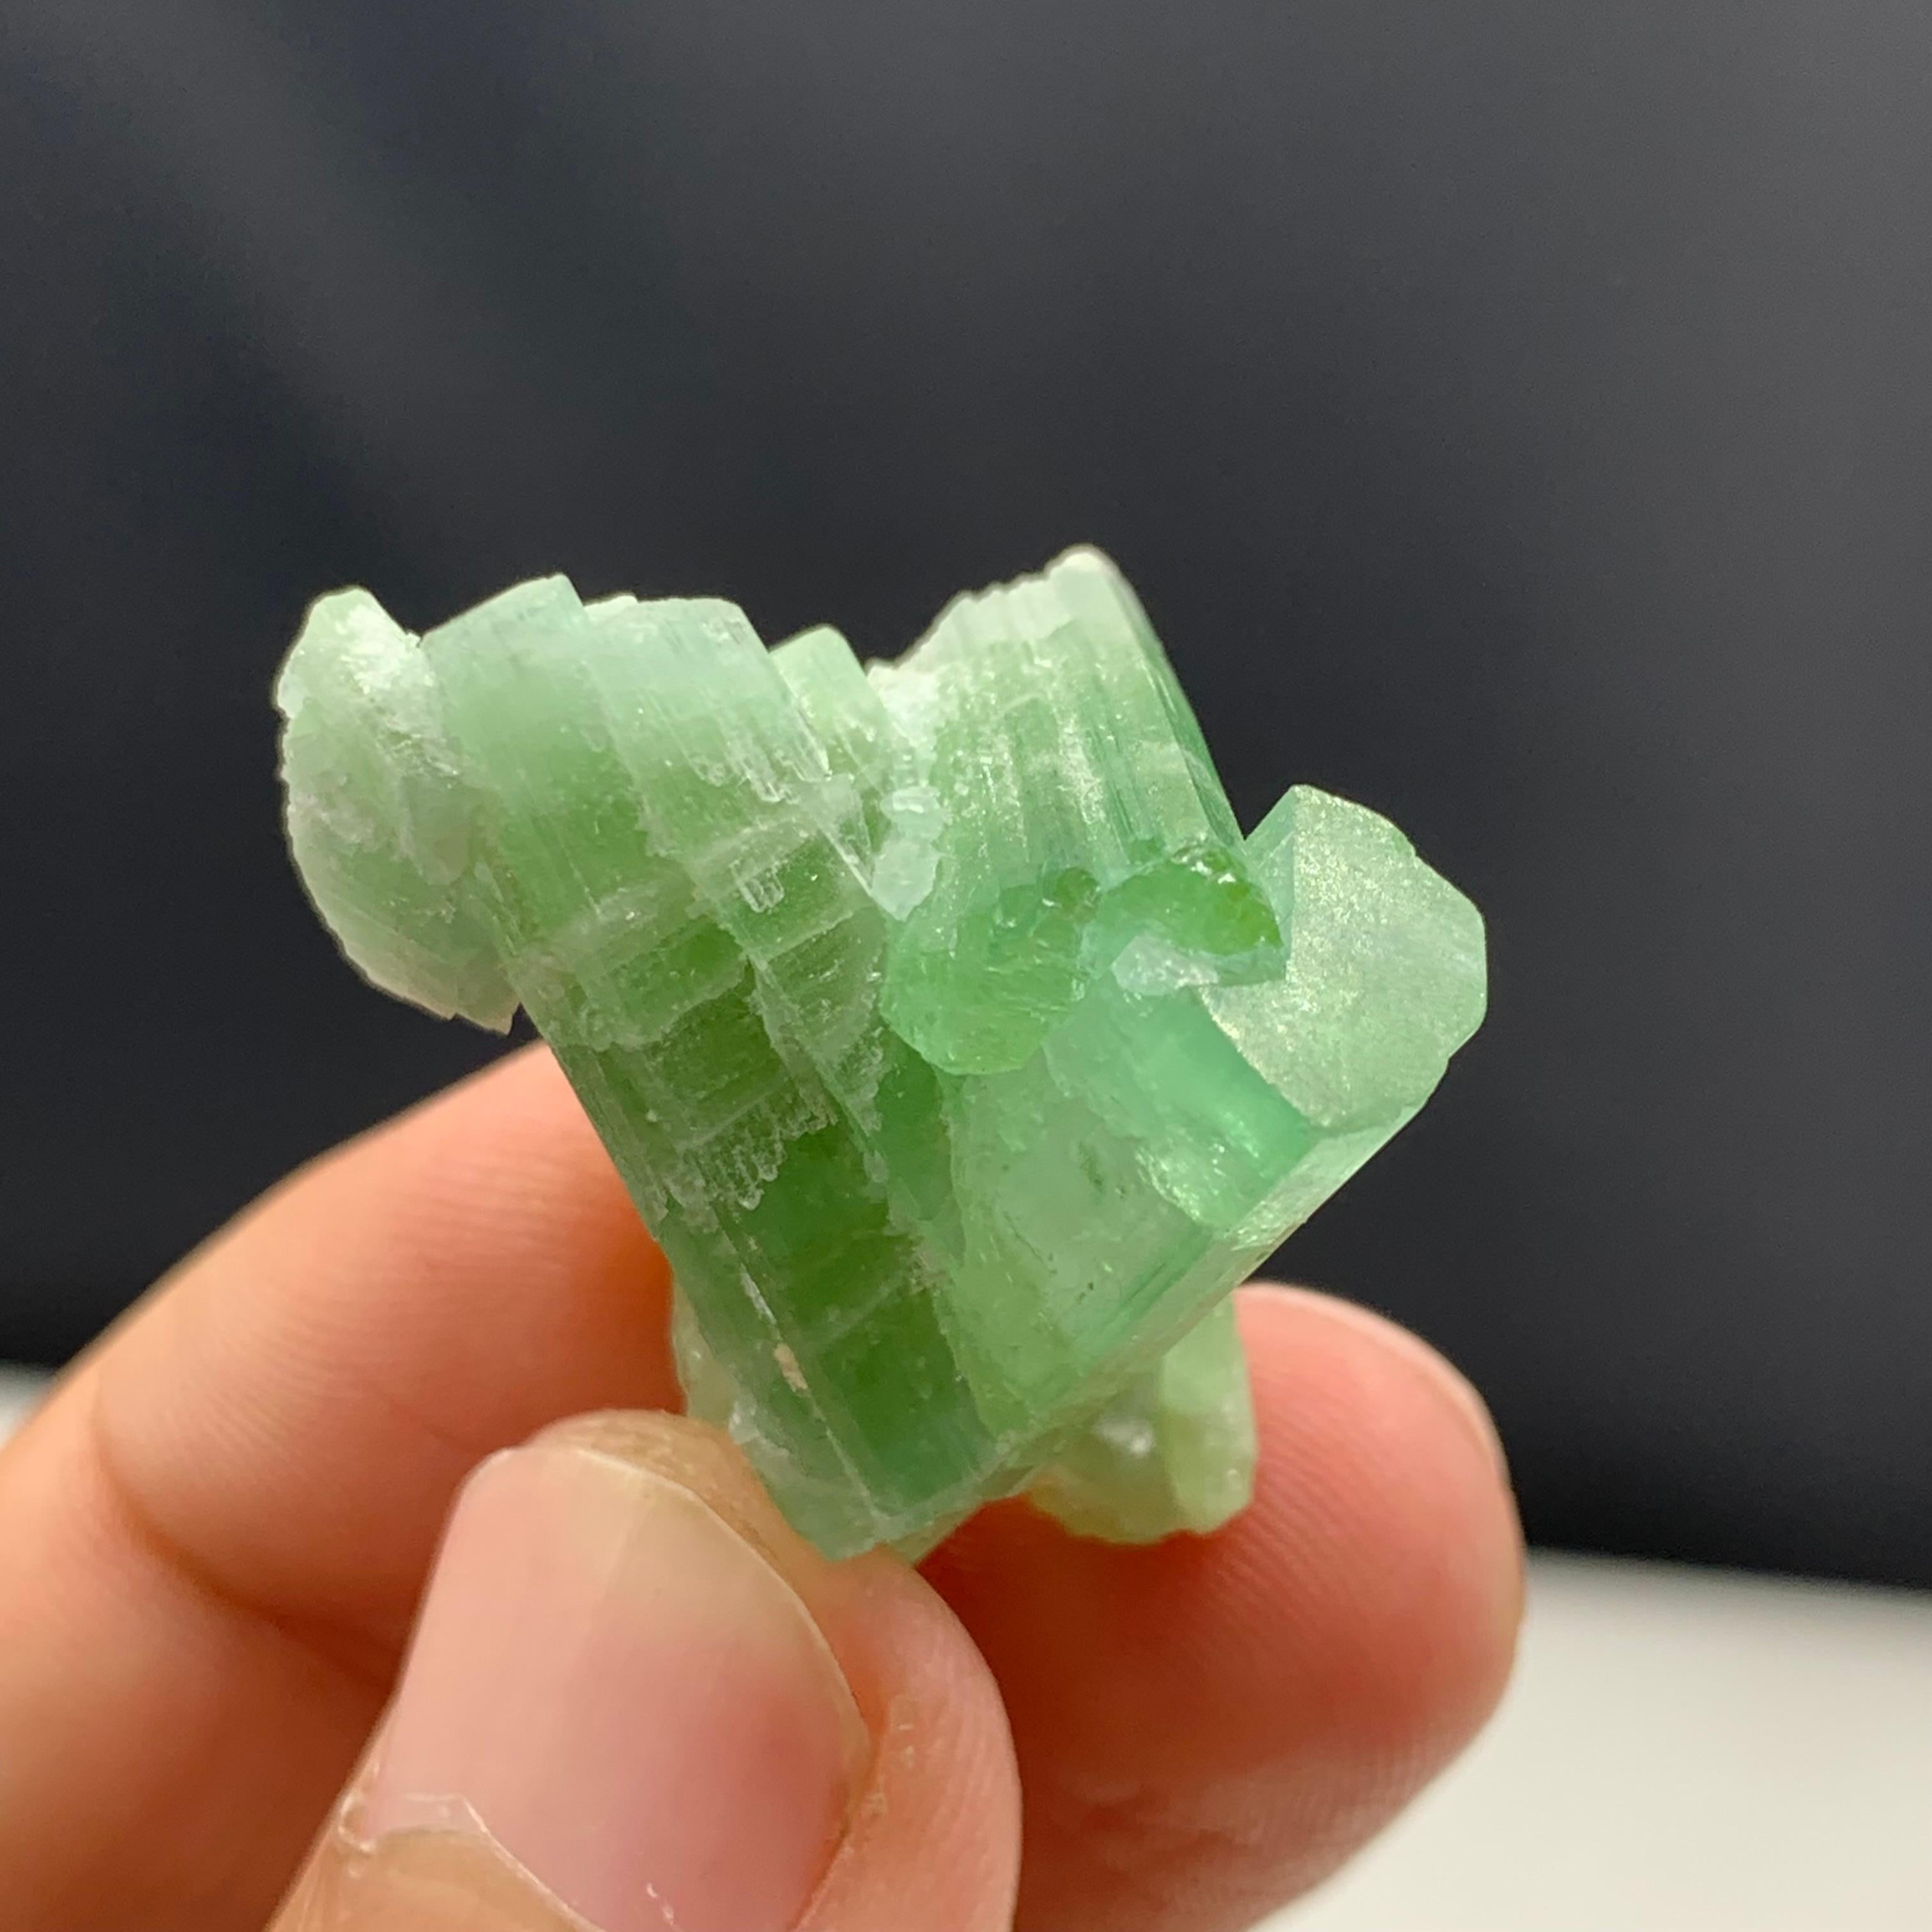 Poudrier de tourmaline verte de Kunar, Afghanistan, 11,22 grammes 

Poids : 11,22 grammes
Dimension : 2,5 x 3,1 x 1,7 cm
Origine : kunar, Afghanistan 

La tourmaline est un groupe minéral de silicate cristallin dans lequel le bore est composé